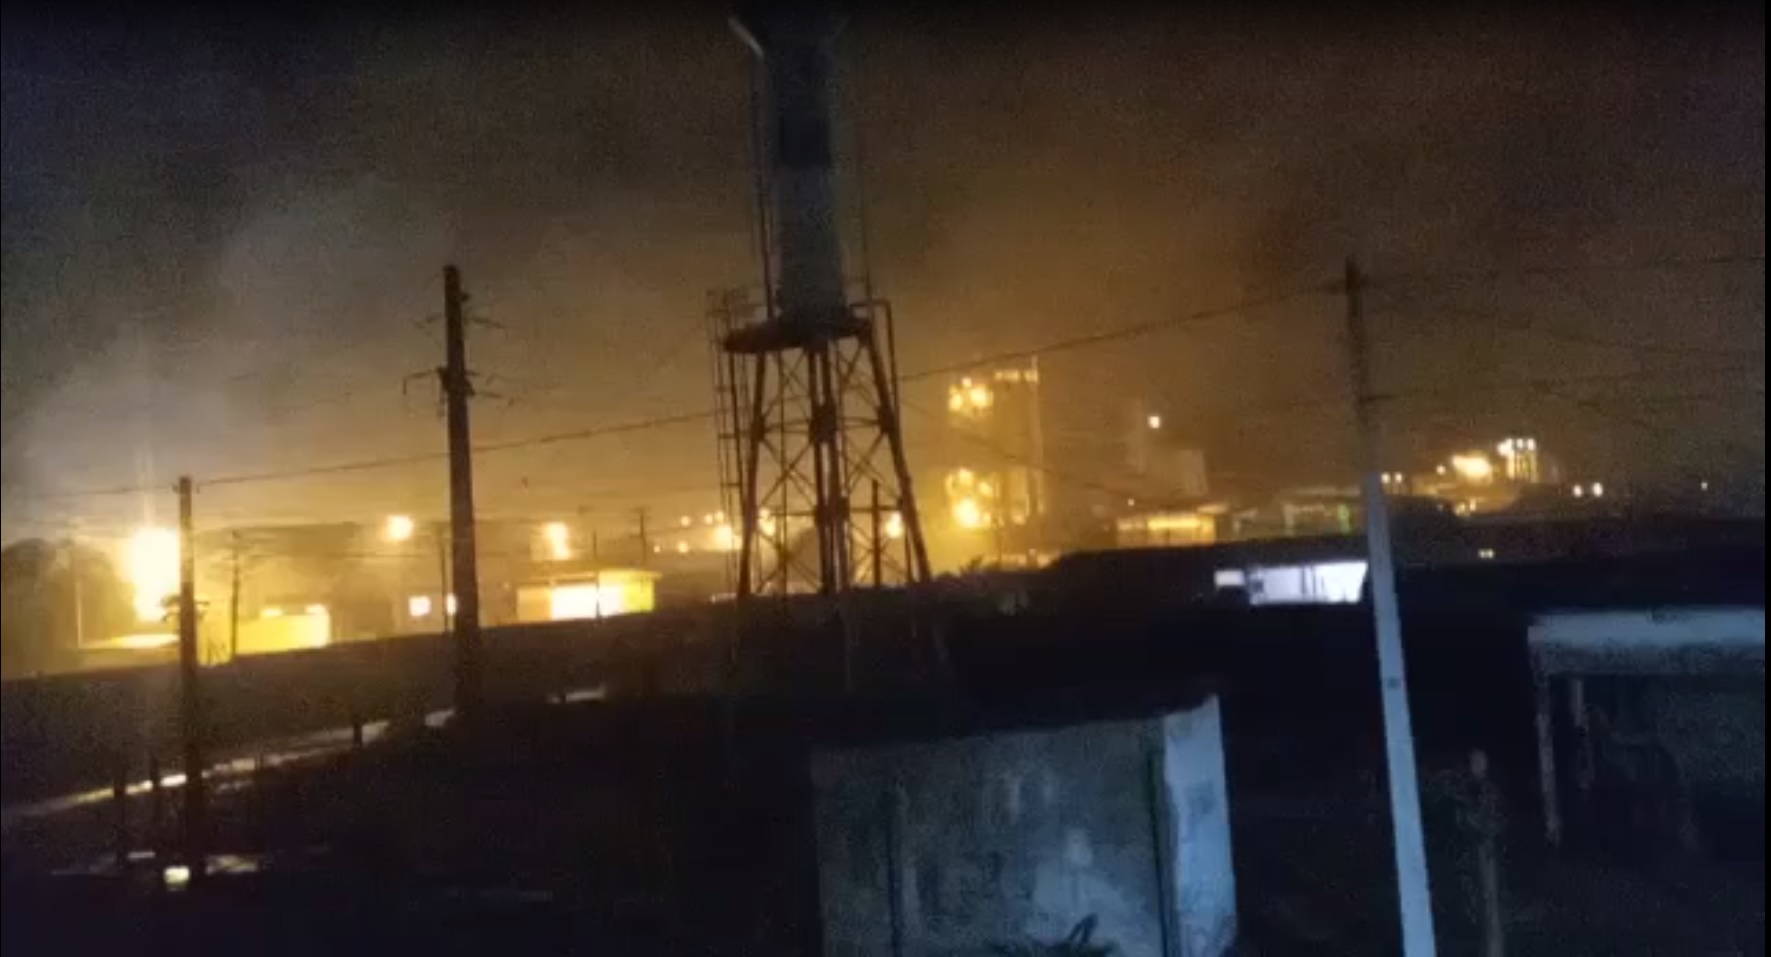 Fumaça tóxica que cobriu o bairro de Vila do Conde após incêndio / Foto: print de vídeo compartilhado por moradores nas redes sociais